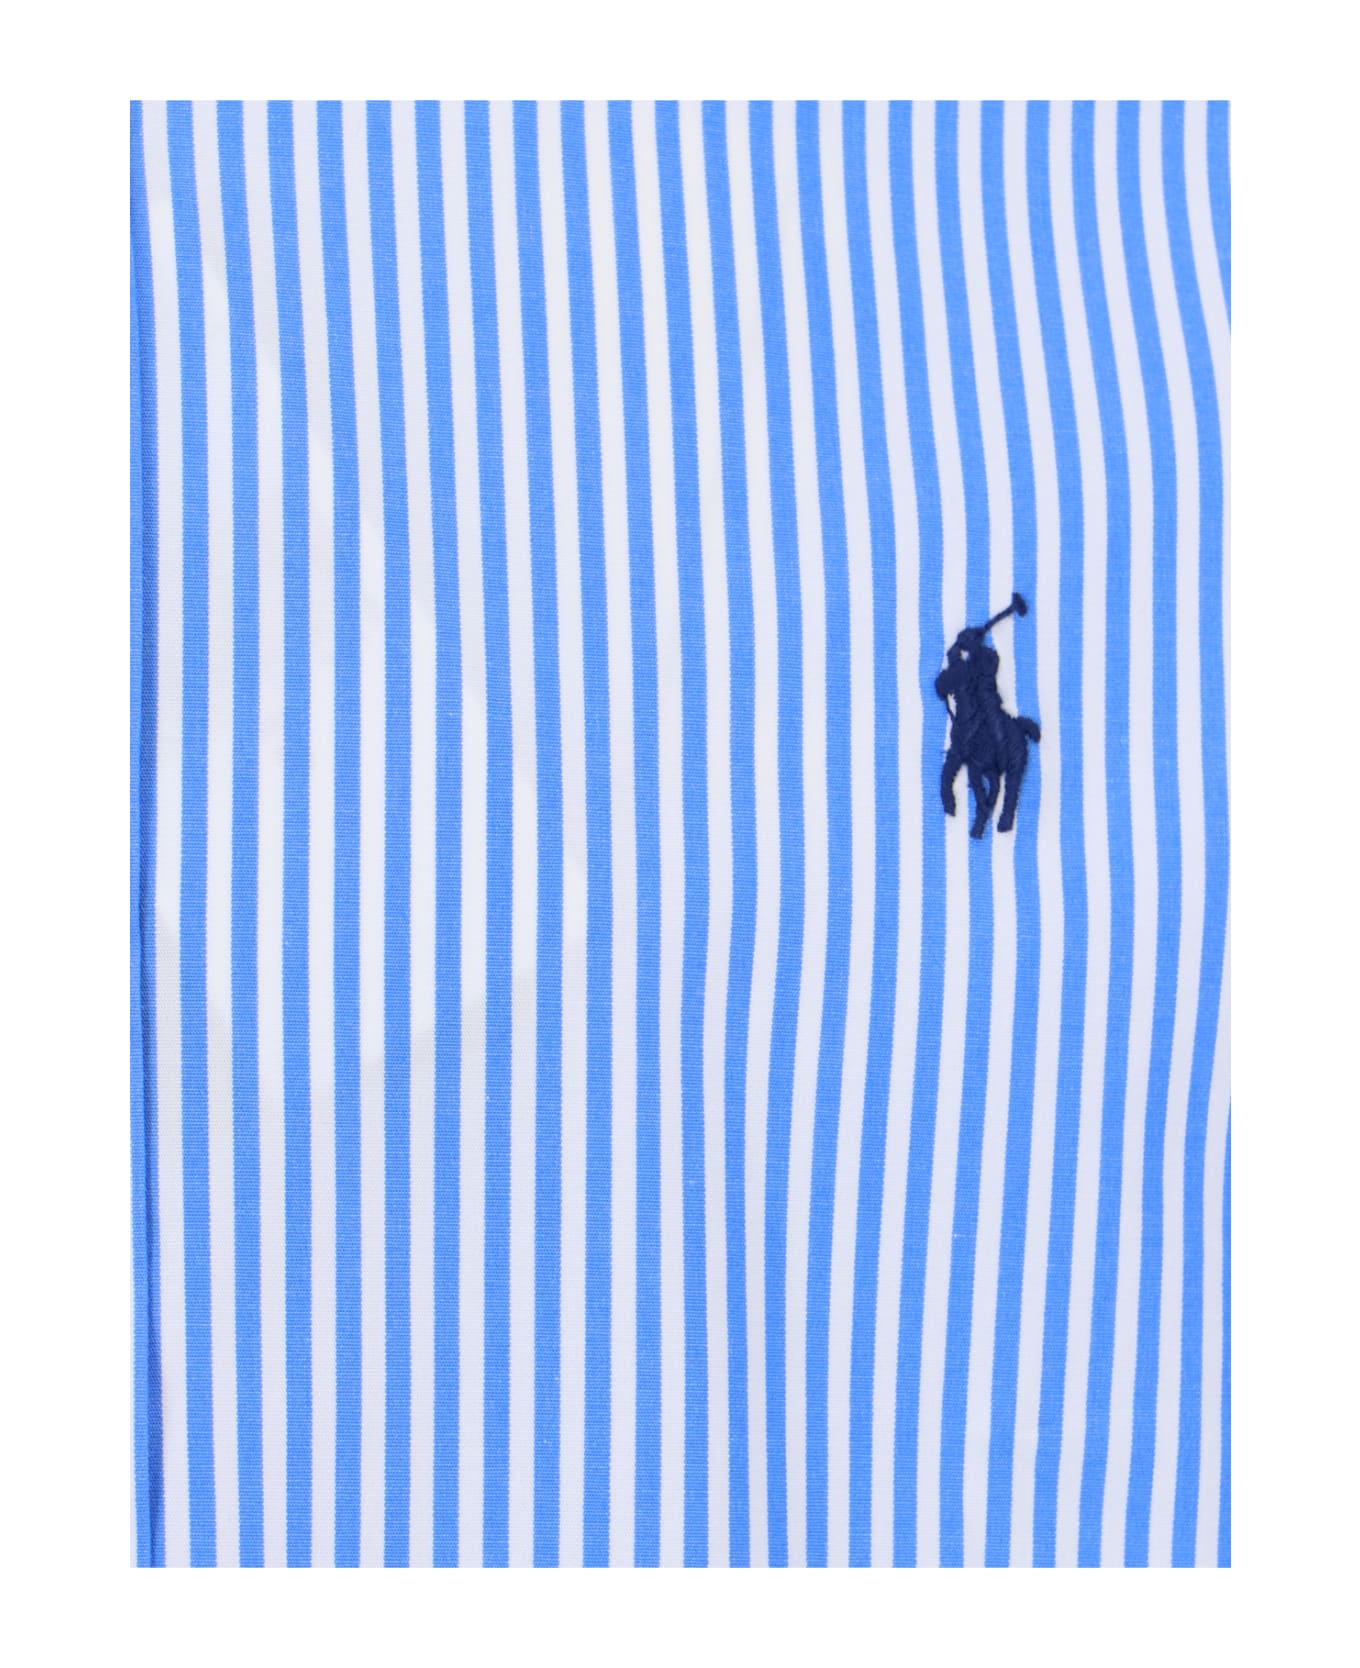 Ralph Lauren Logo Striped Shirt - Blue シャツ